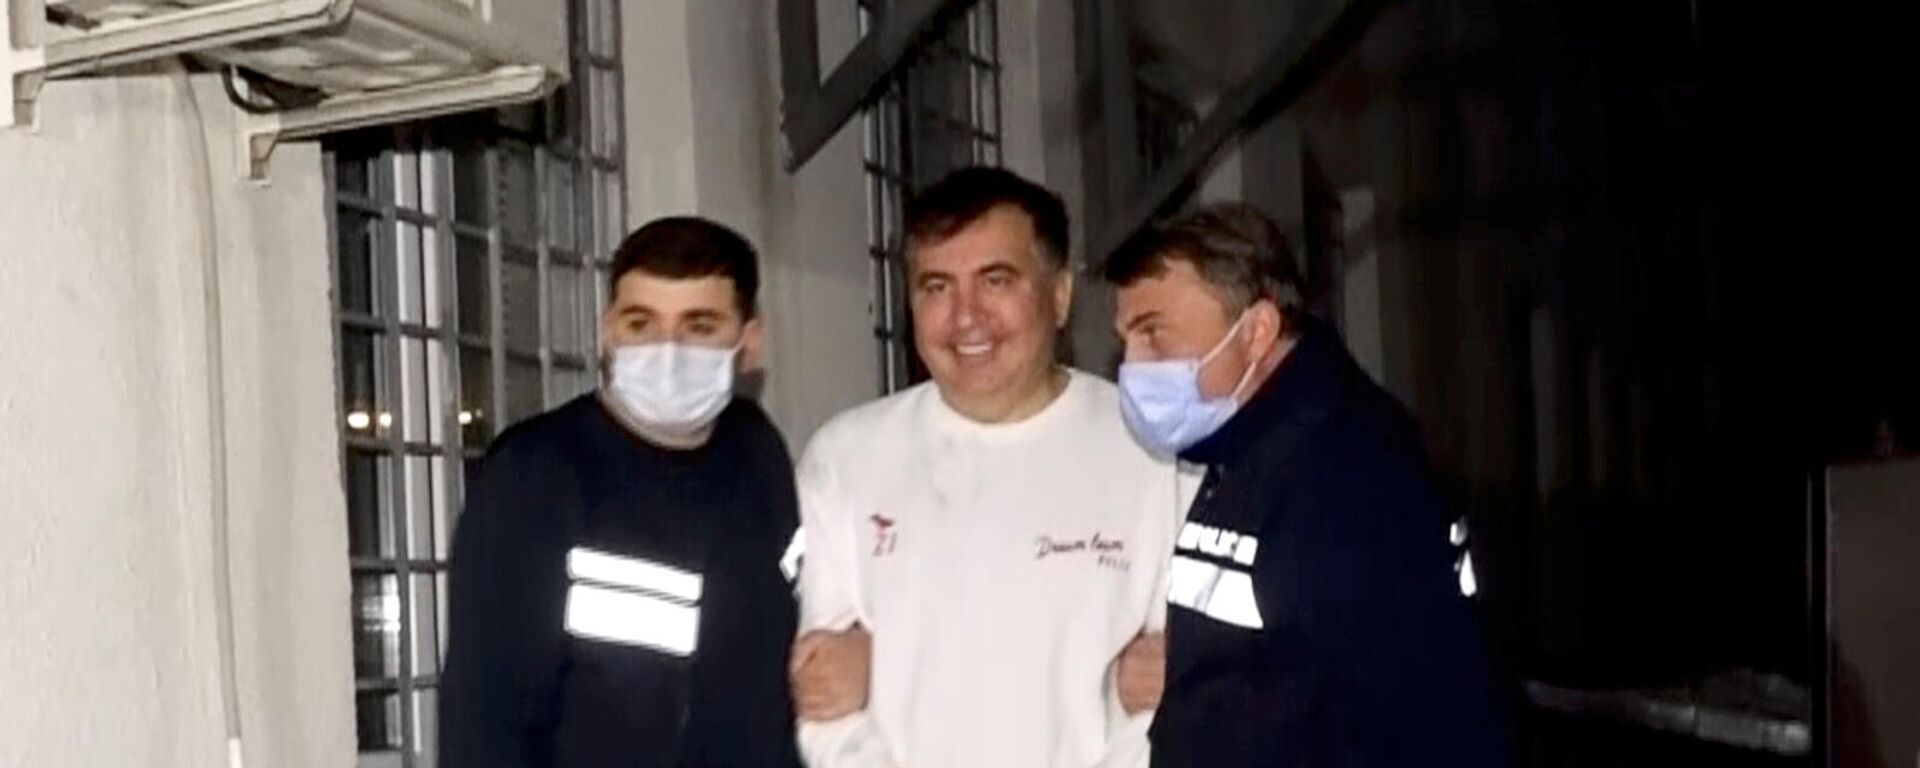 Сотрудники полиции сопровождают бывшего президента Грузии Михаила Саакашвили, который был задержан после возвращения в Грузию (1 октября 2021). Рустави - Sputnik Արմենիա, 1920, 01.10.2021